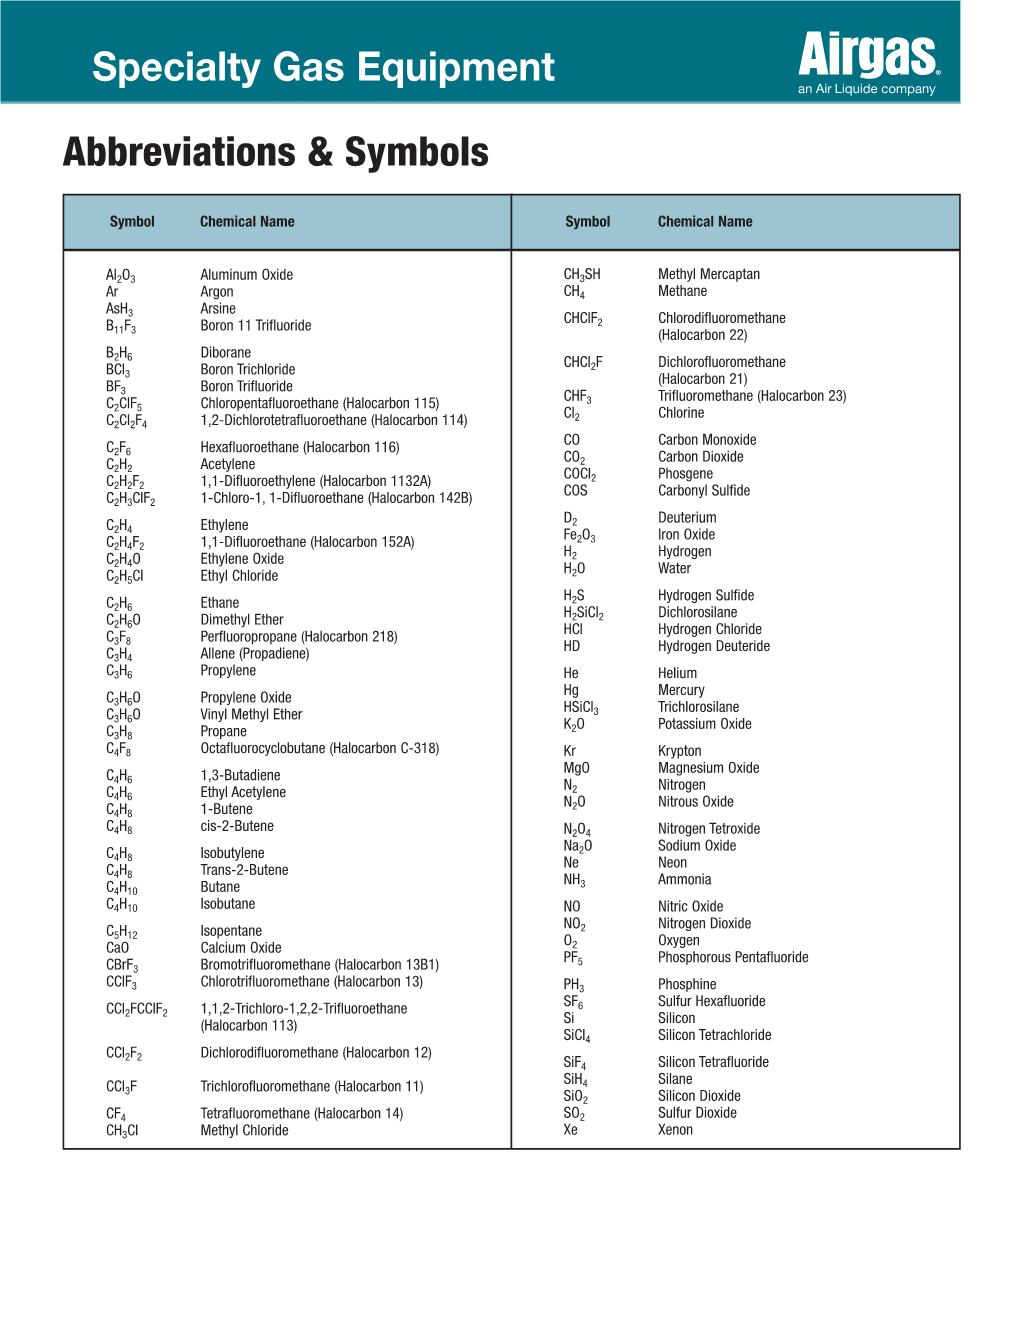 Abbreviations & Symbols Specialty Gas Equipment